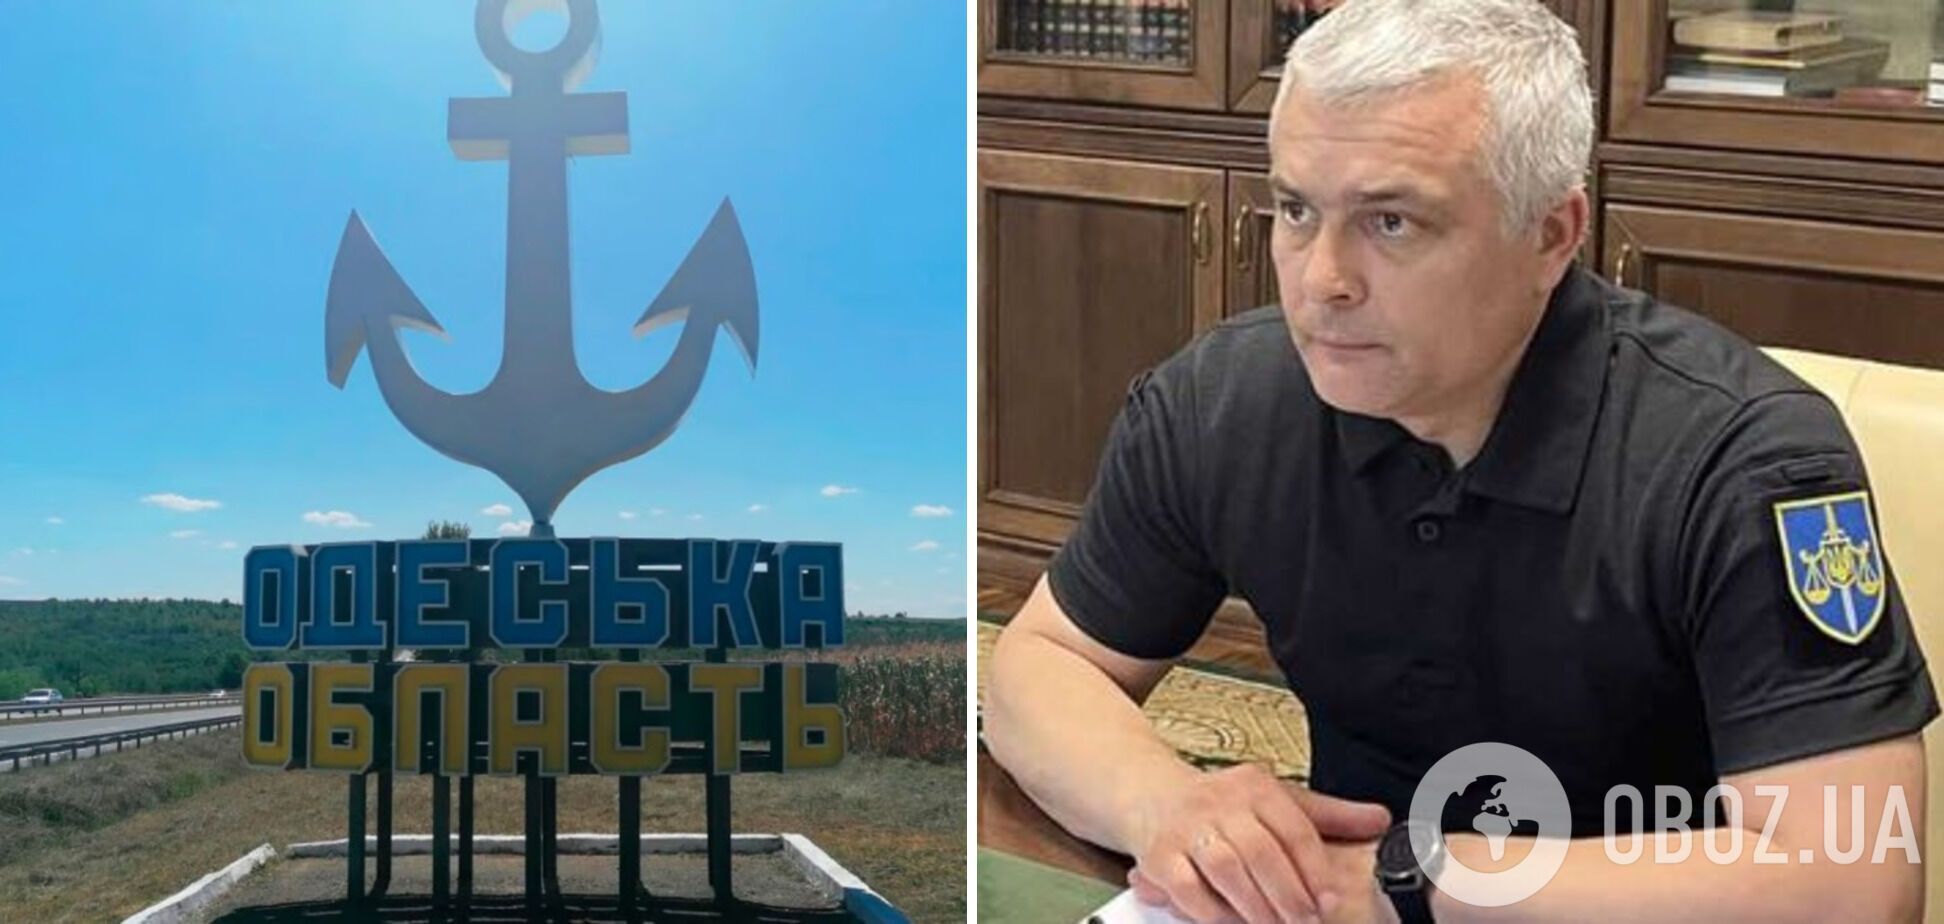 Одесскую область возглавит руководитель столичной прокуратуры Олег Кипер: что о нём известно